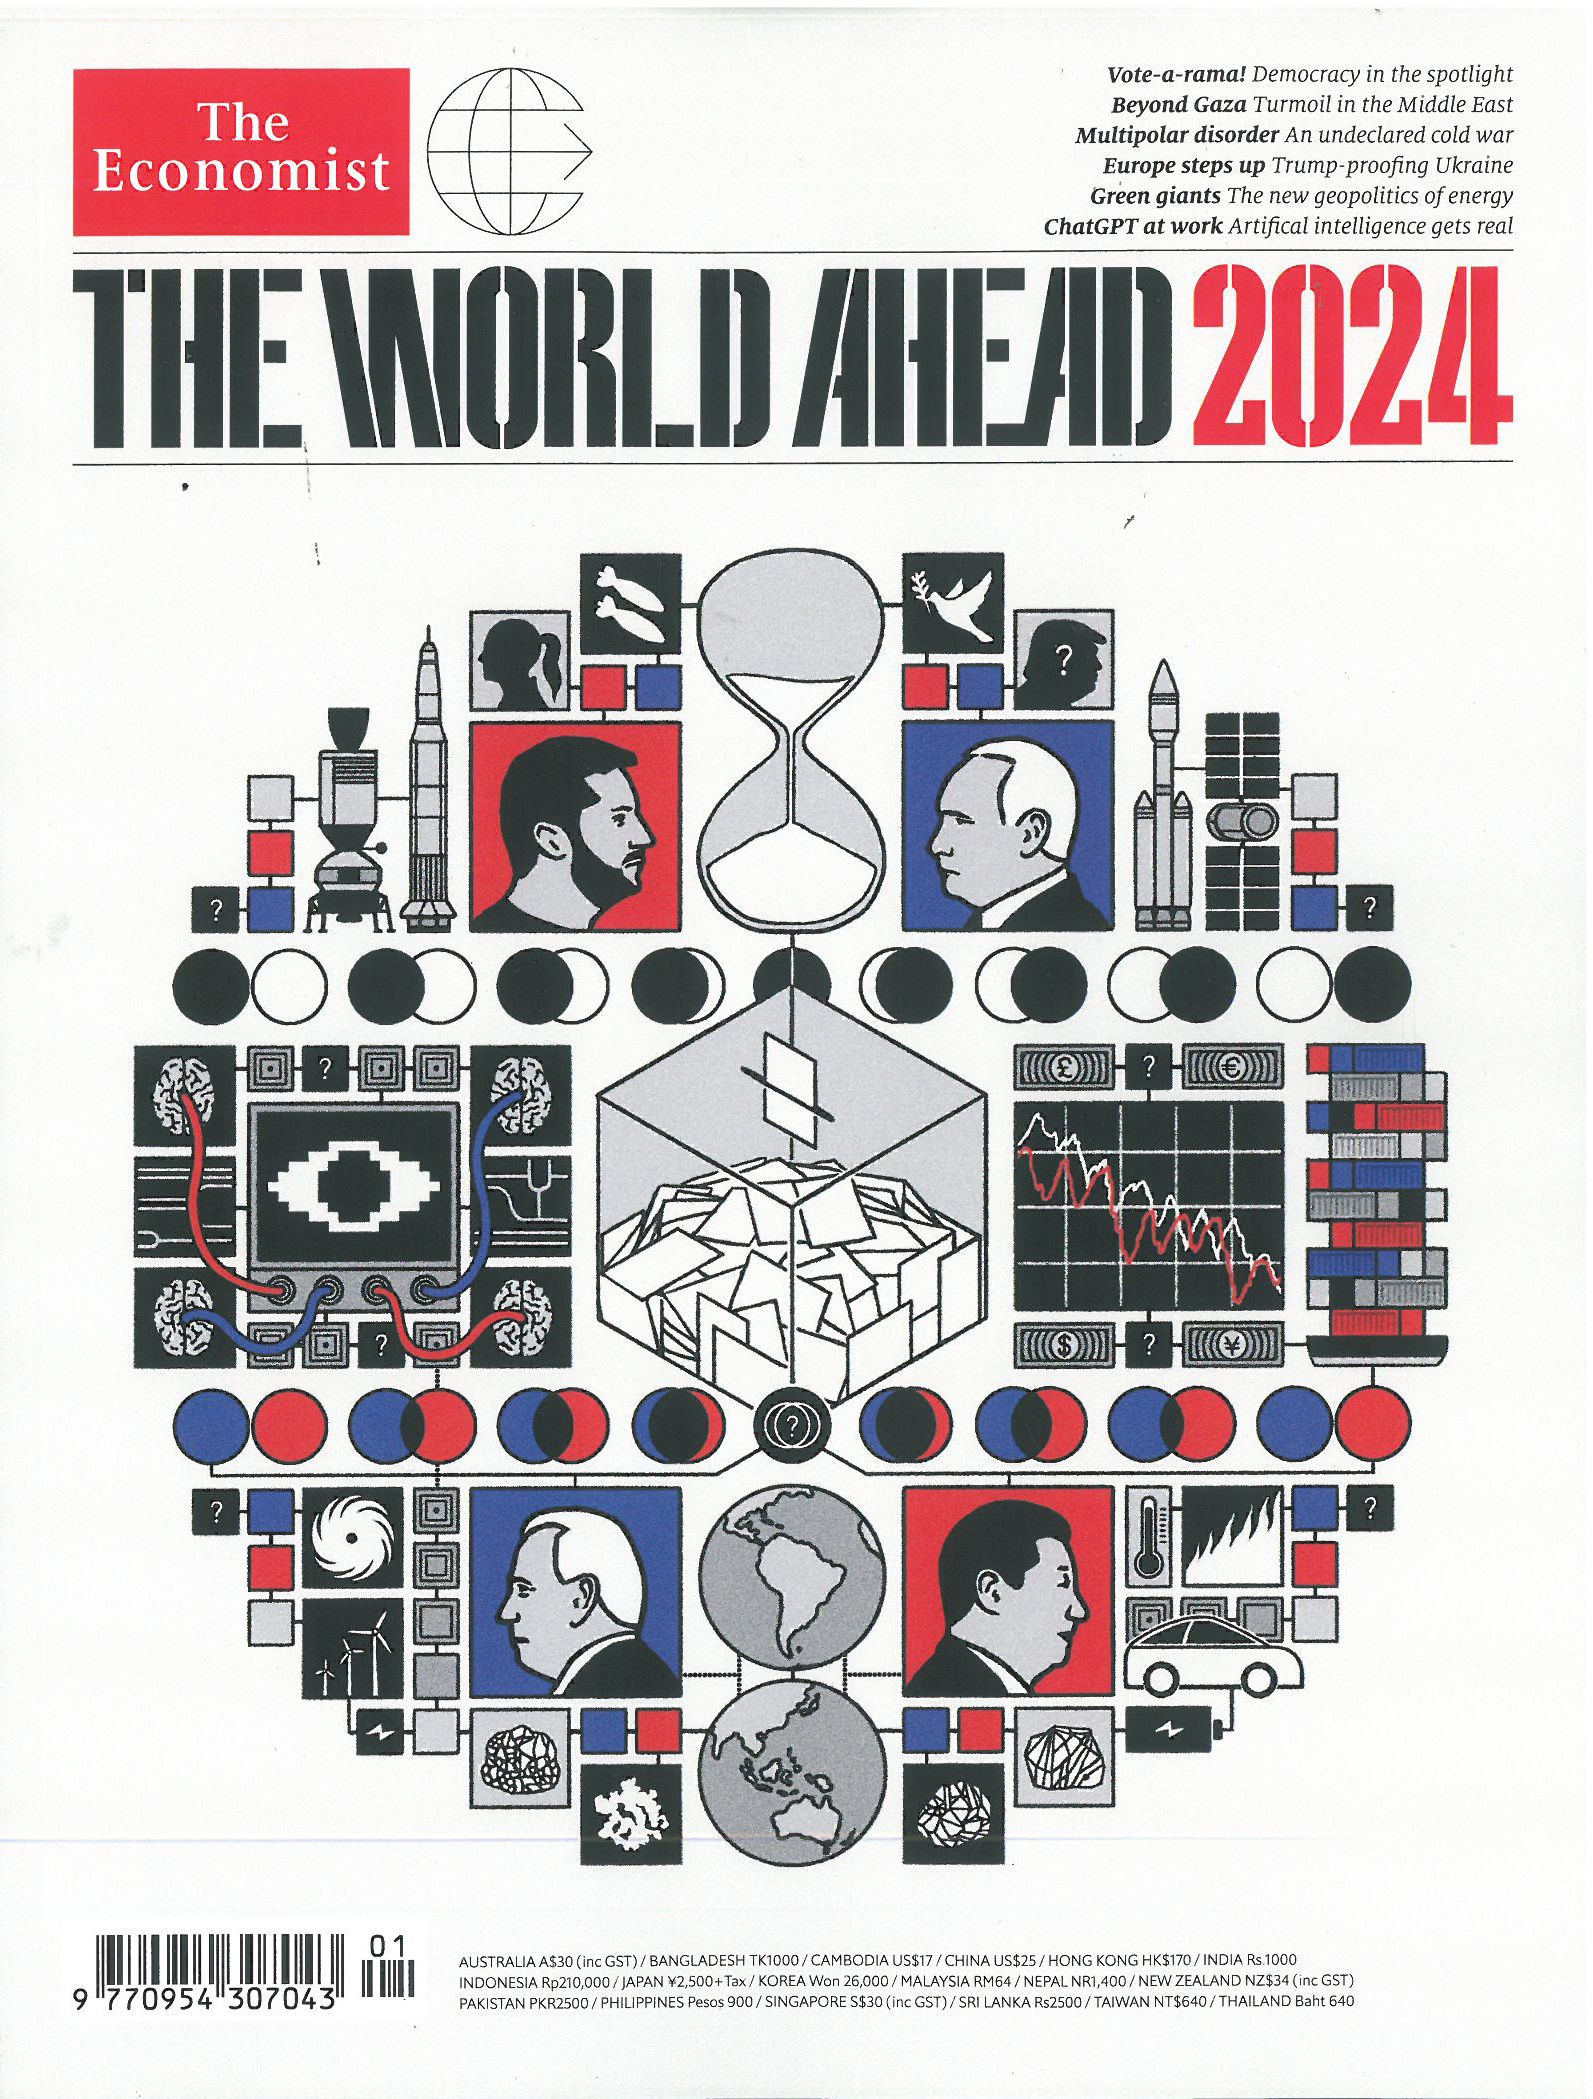 THE WORLD AHEAD 2023